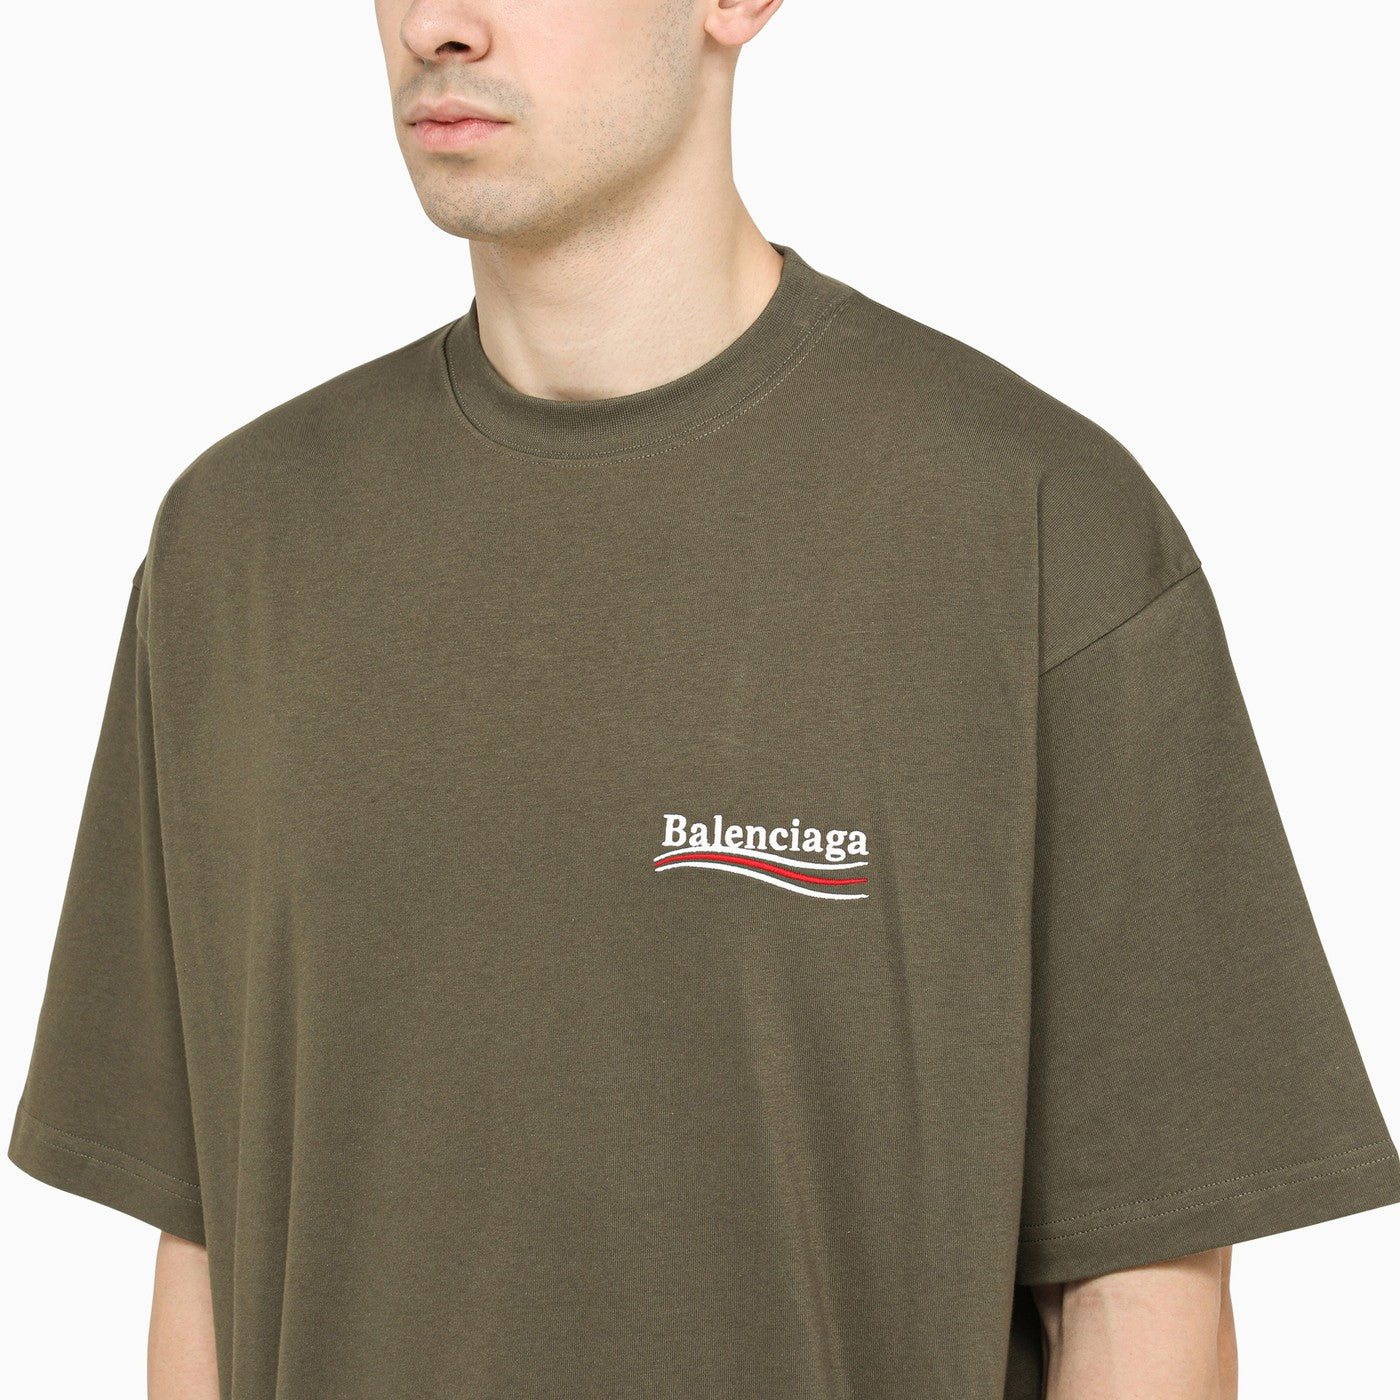 Balenciaga TShirts Short Sleeved For Men 845733 2900 USD Wholesale Replica  Balenciaga TShirts  Balenciaga t shirt New t shirt design Fake clothes